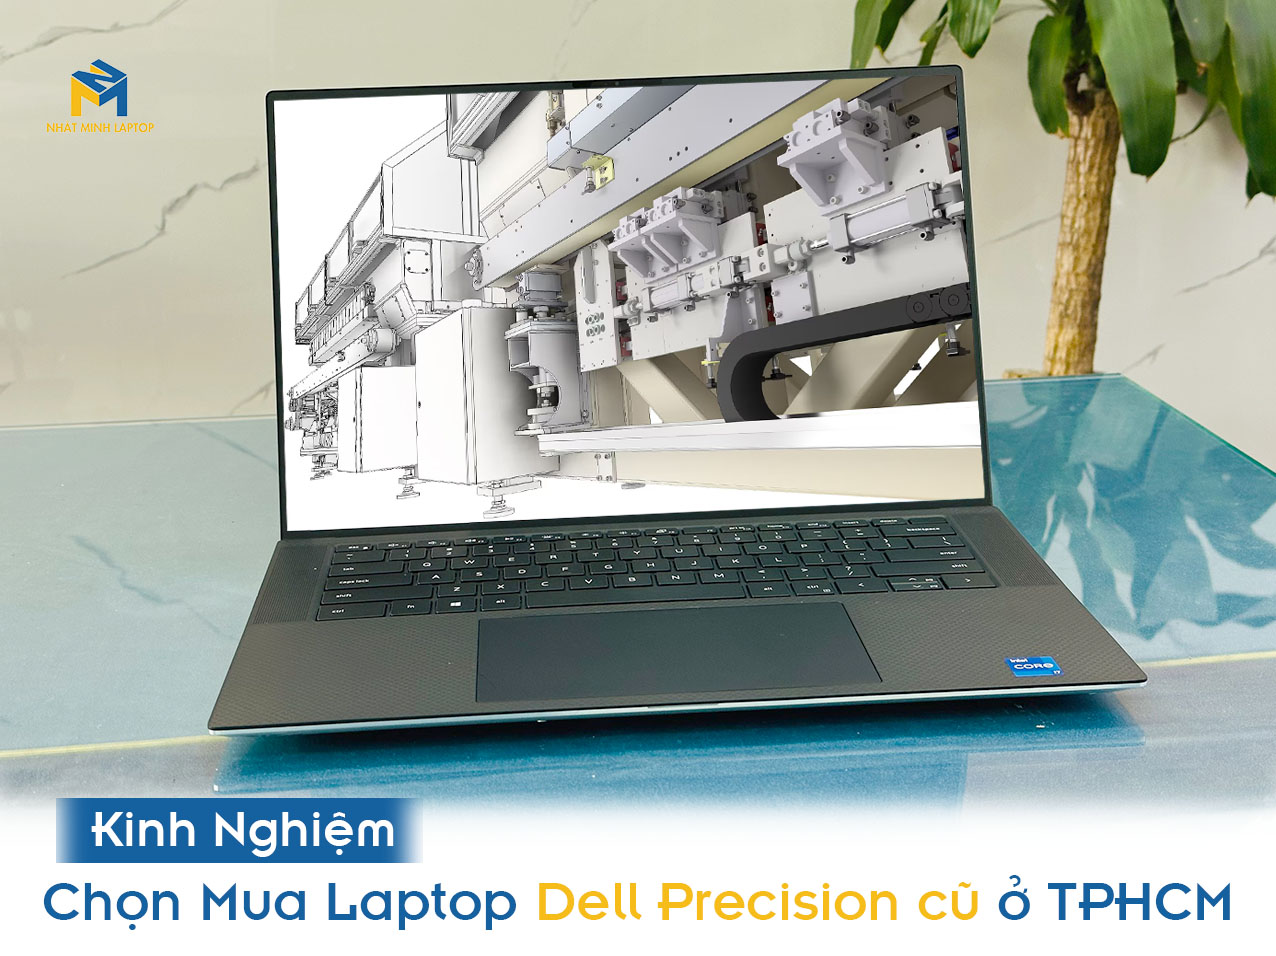 Mua Laptop Dell Precision cũ ở đâu? Cập nhật những máy Trạm đáng sở hữu nhất